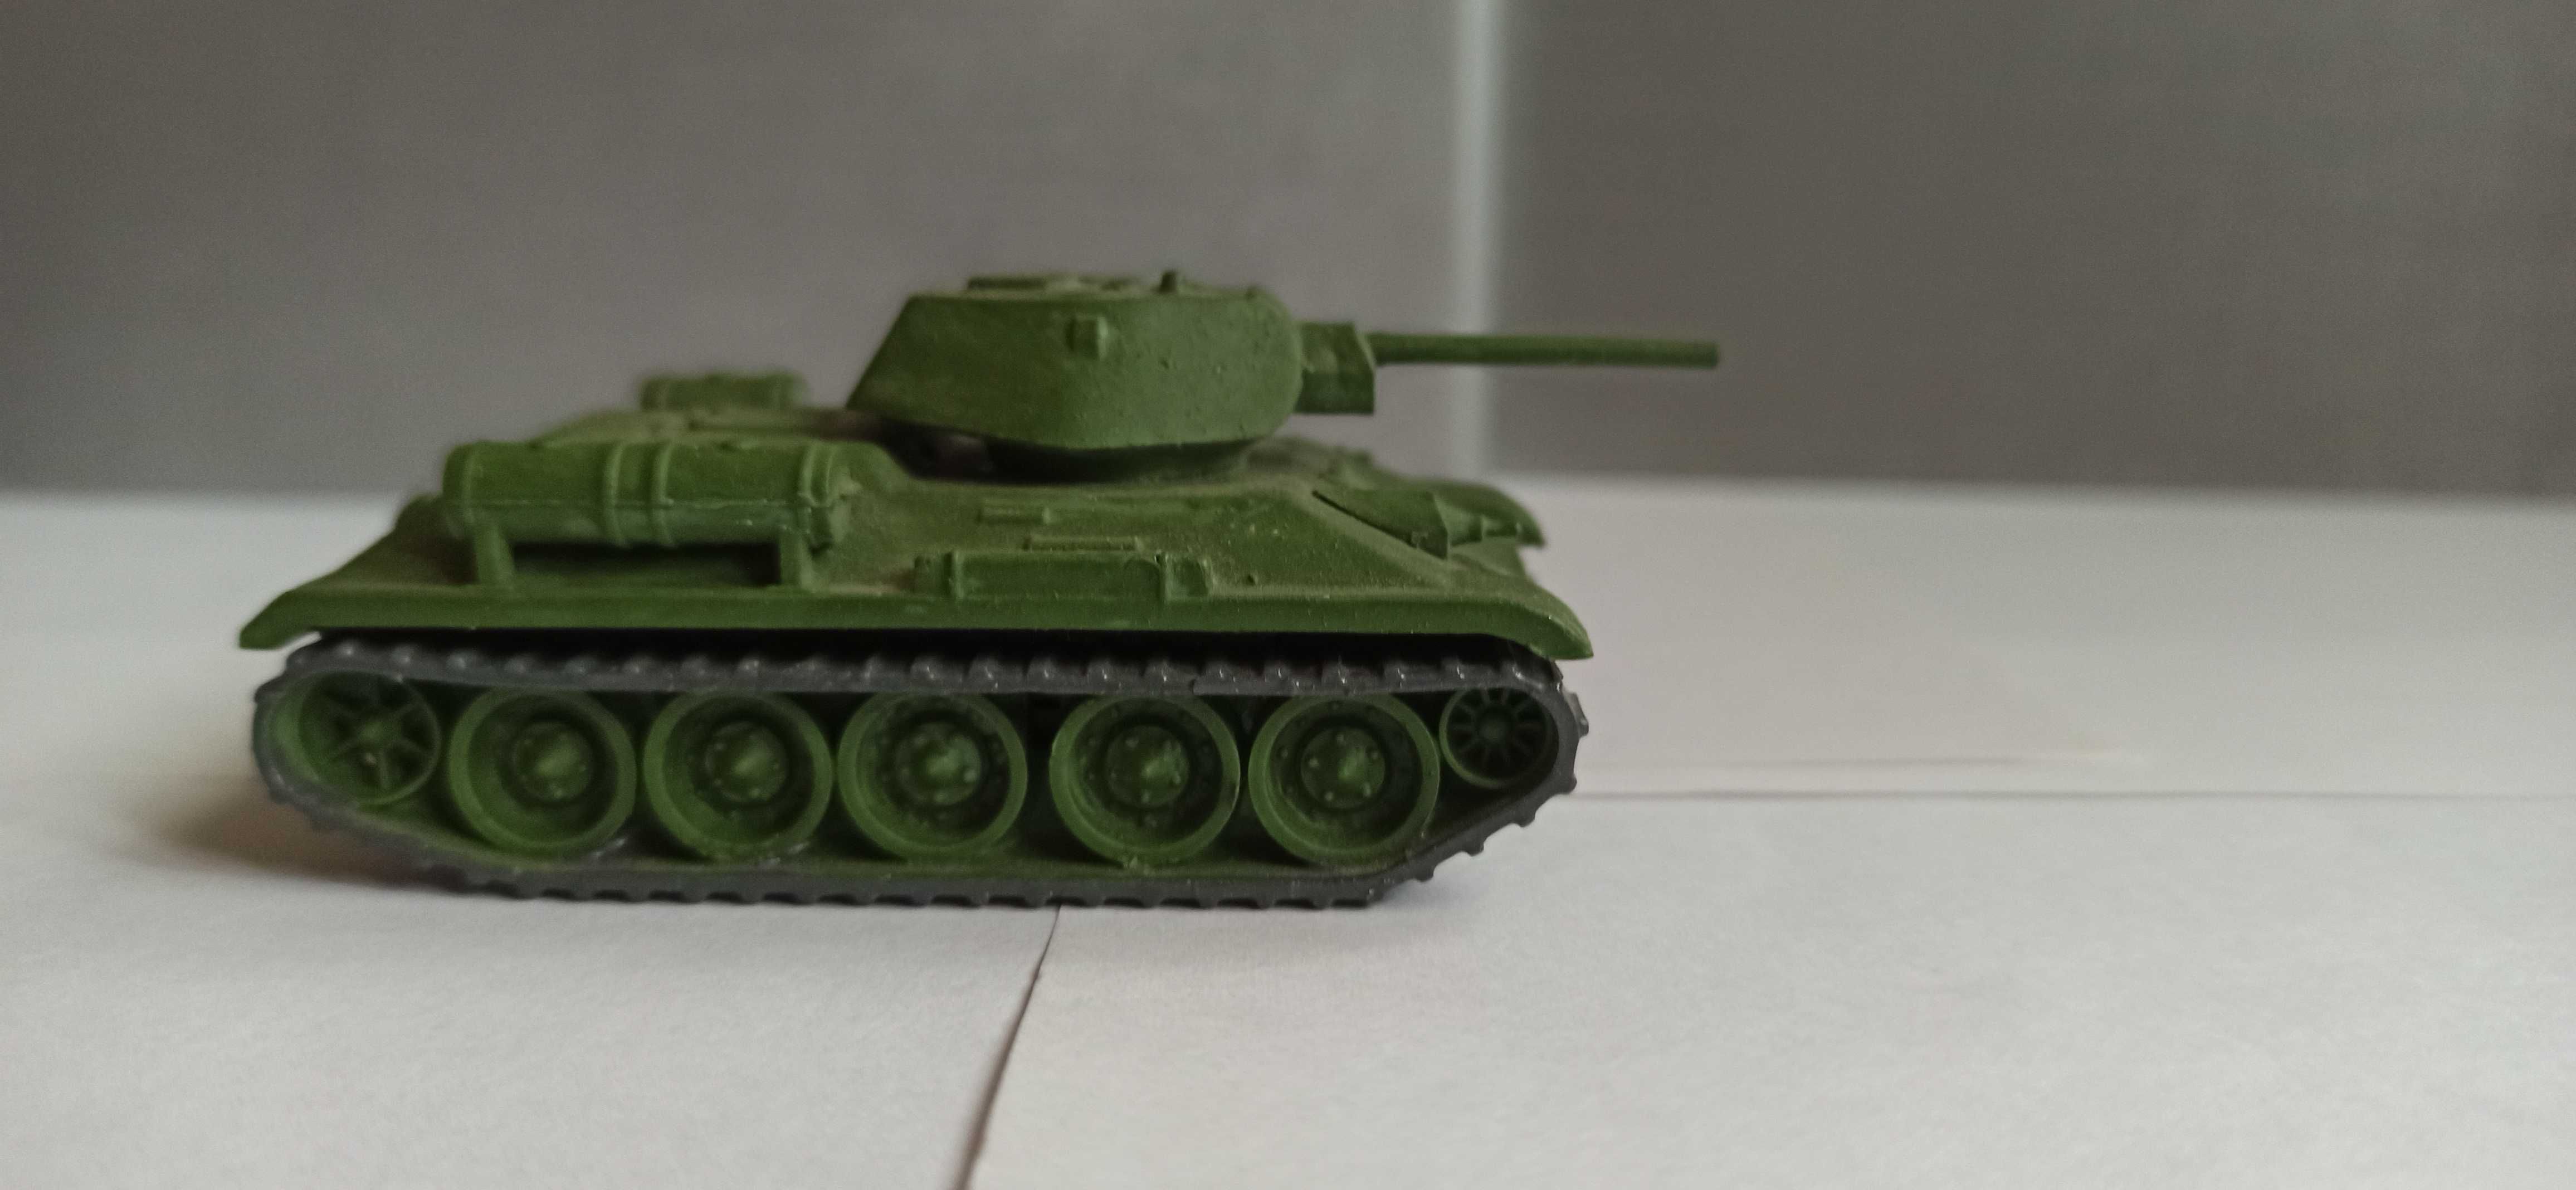 Танк Т-34-76 серийный